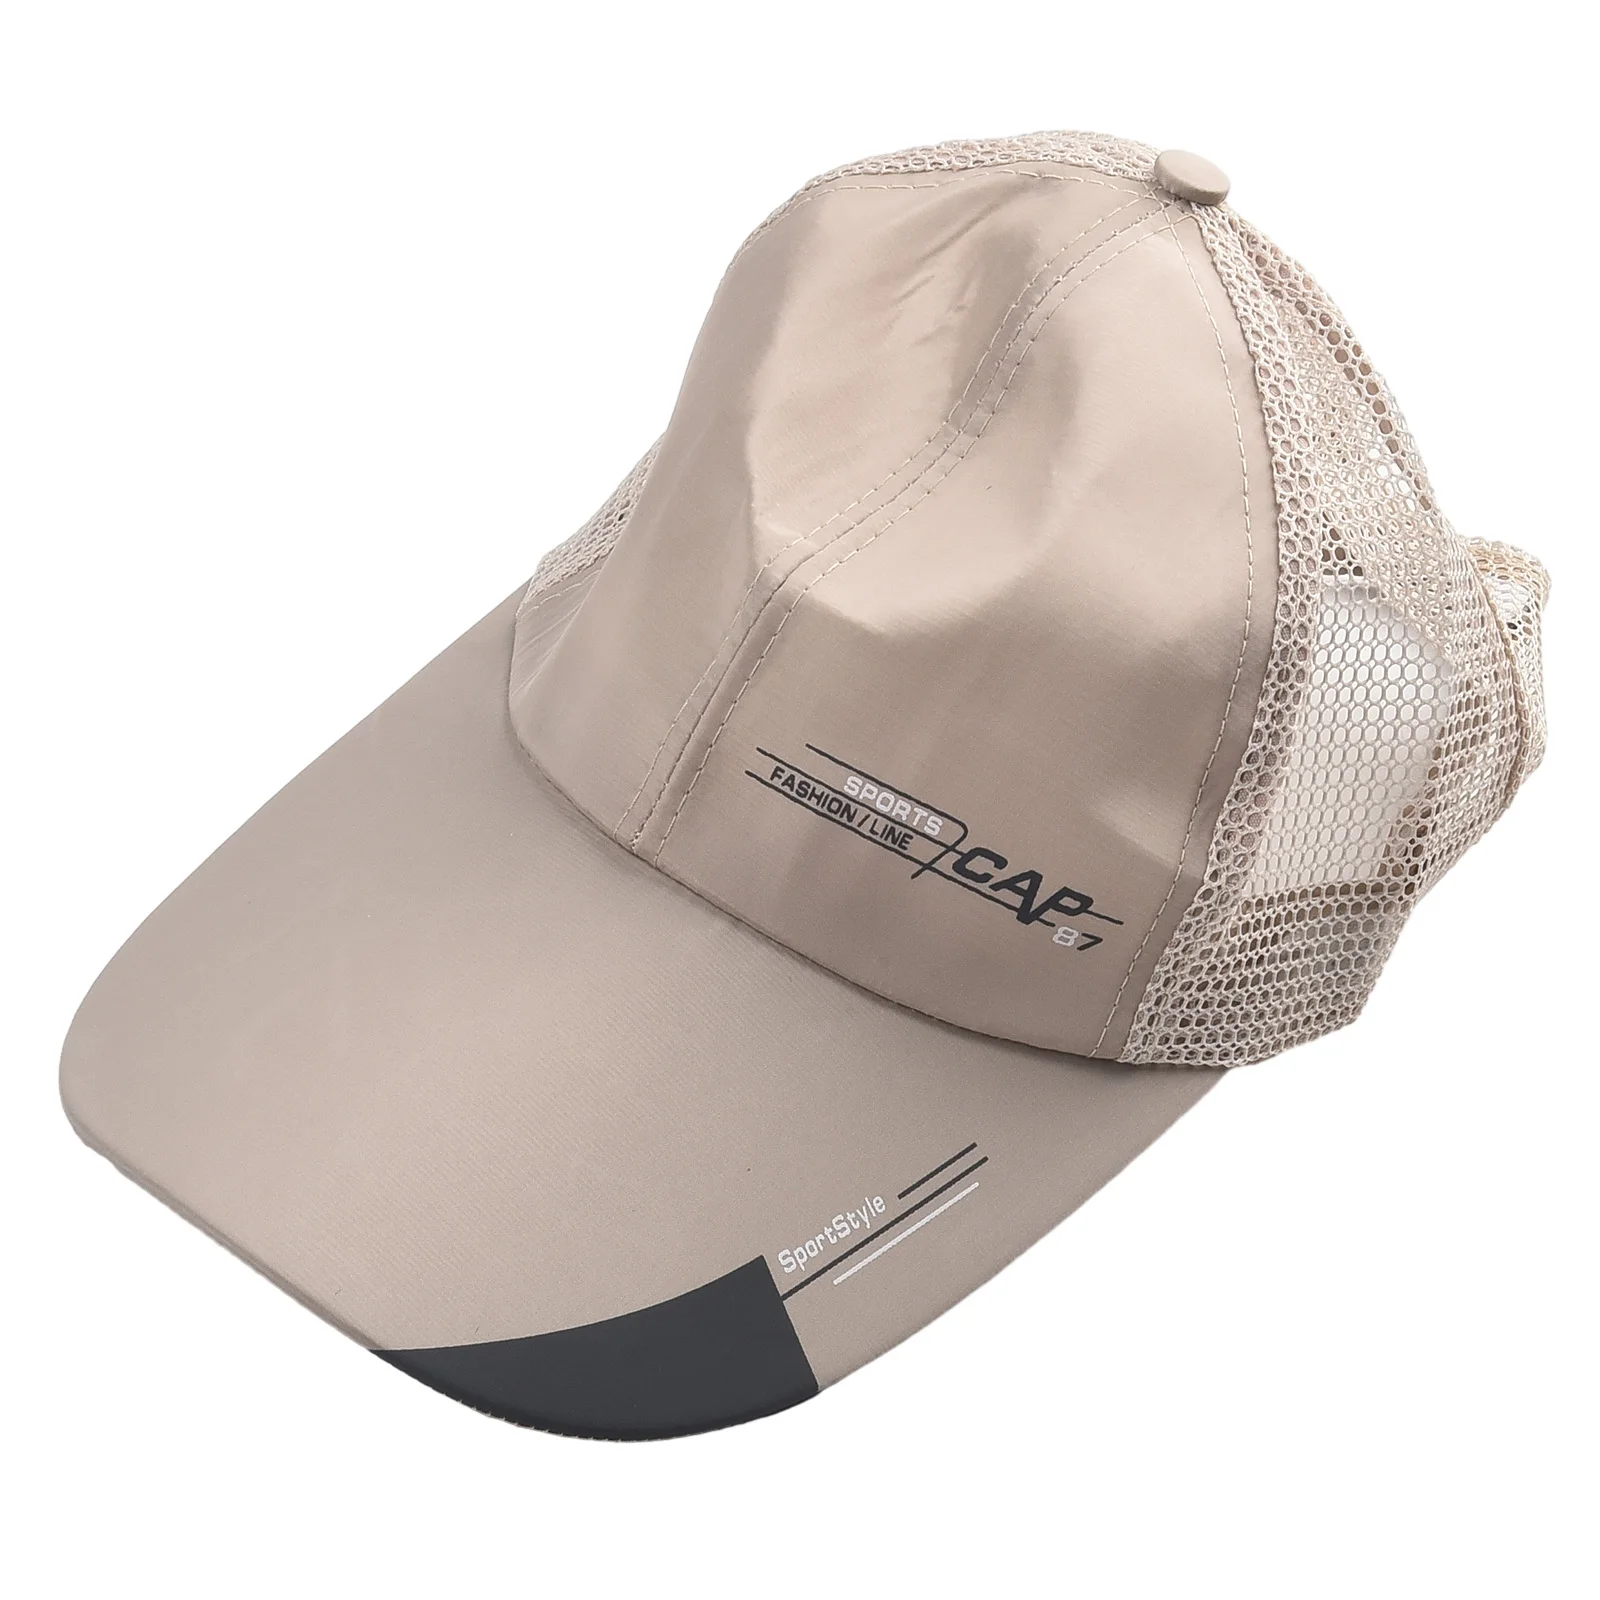 עמיד באיכות גבוהה כובע מגן השמש כובע מתכוונן Fising הכובע על דיג, מחנאות וטיולים רב תכליתי - 2